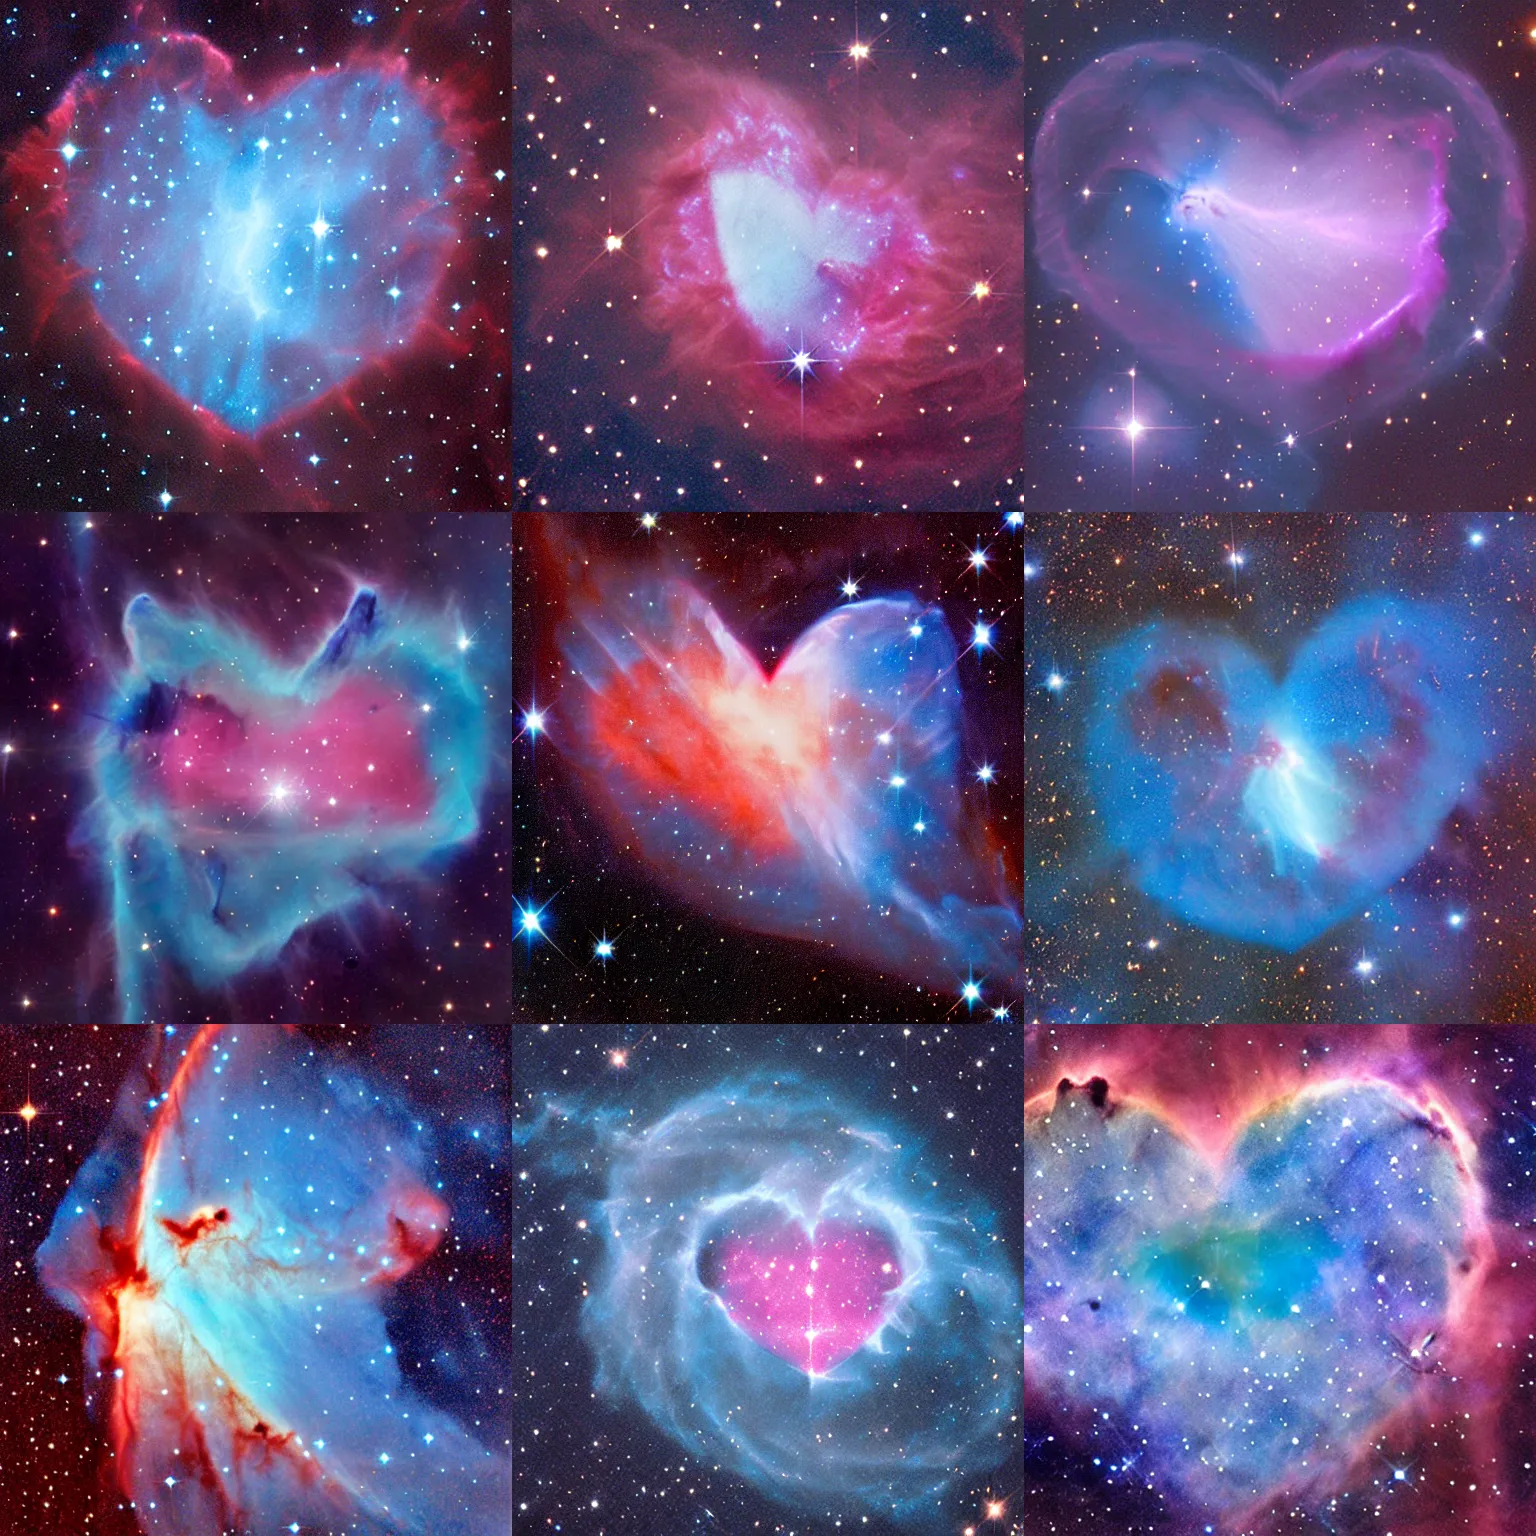 Prompt: nebula in the shape of a blue heart, bu hubble telescope